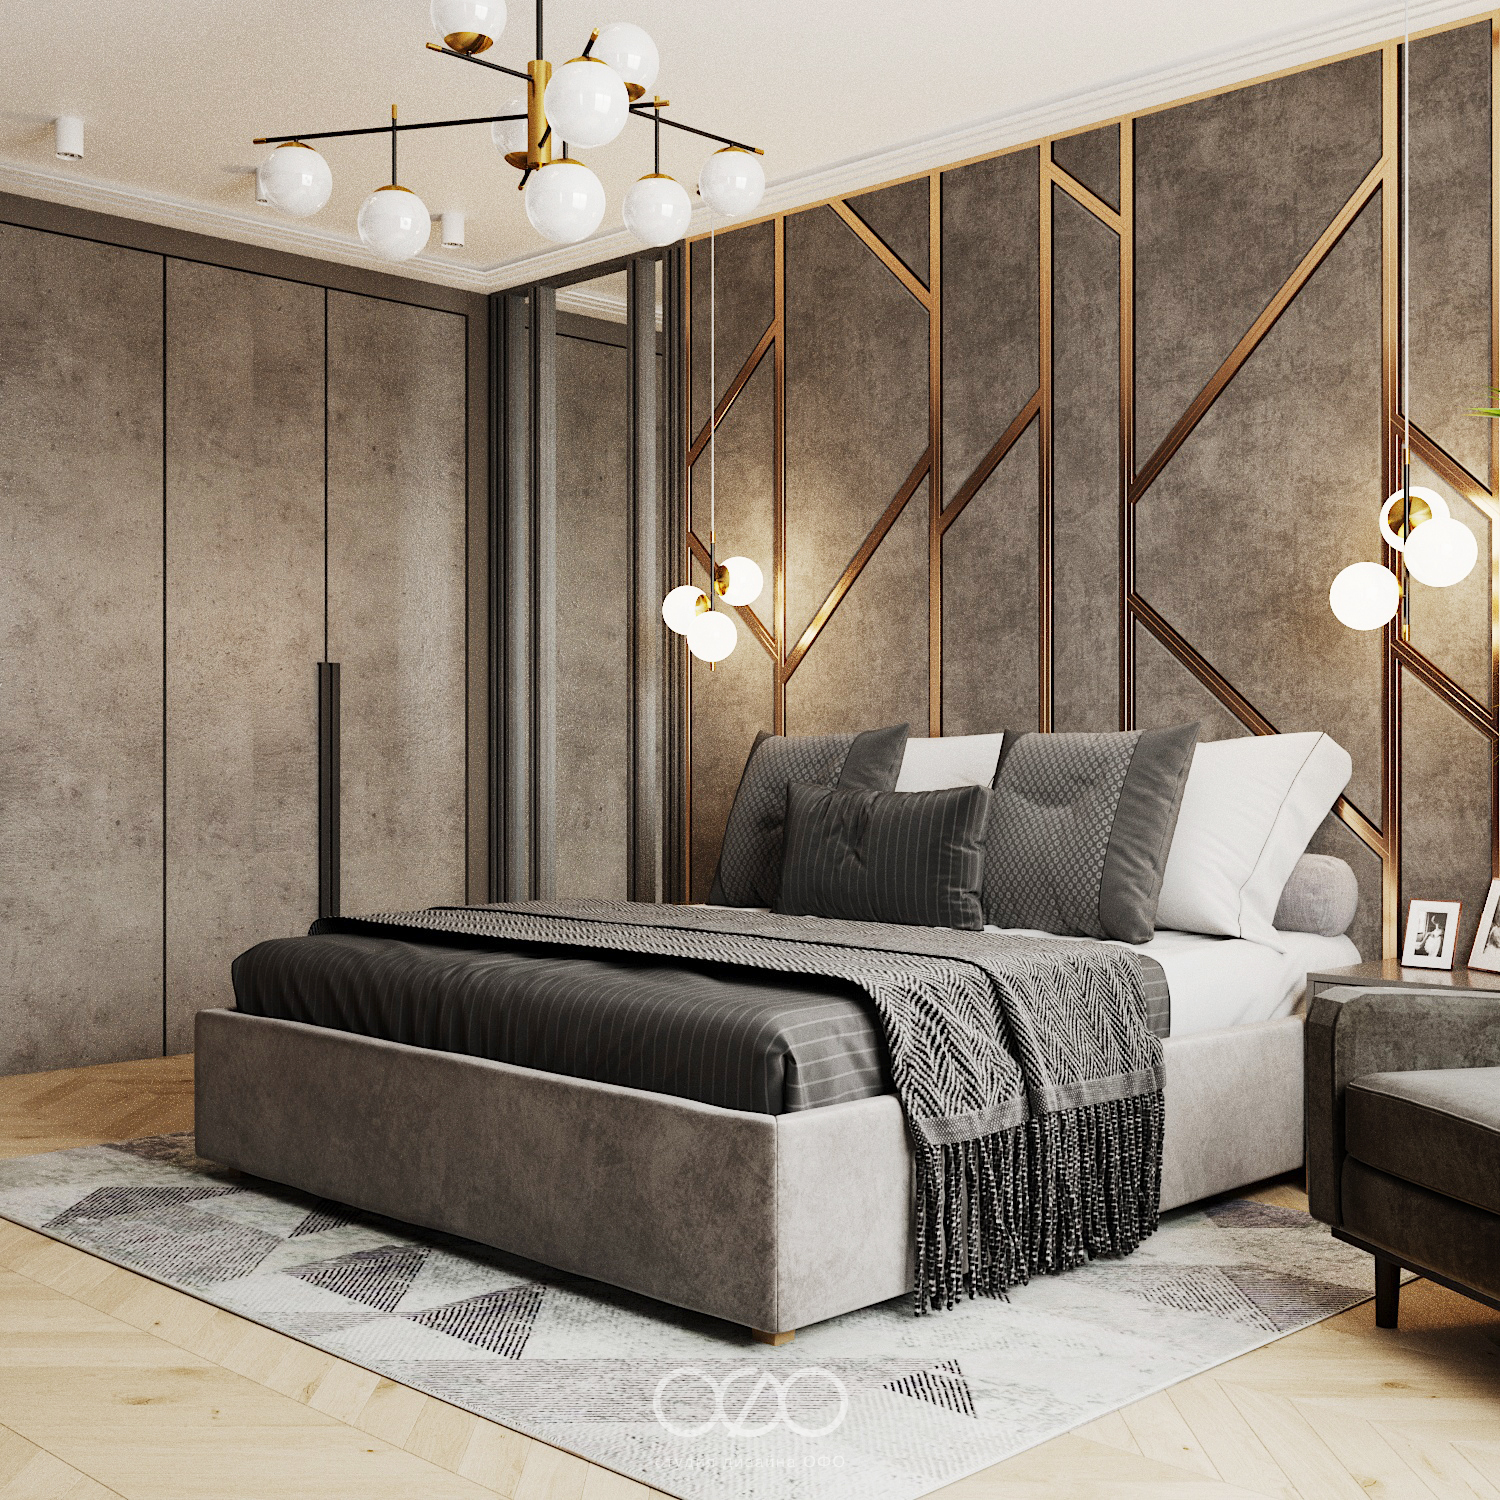 Идеи дизайна спальни 14 кв м